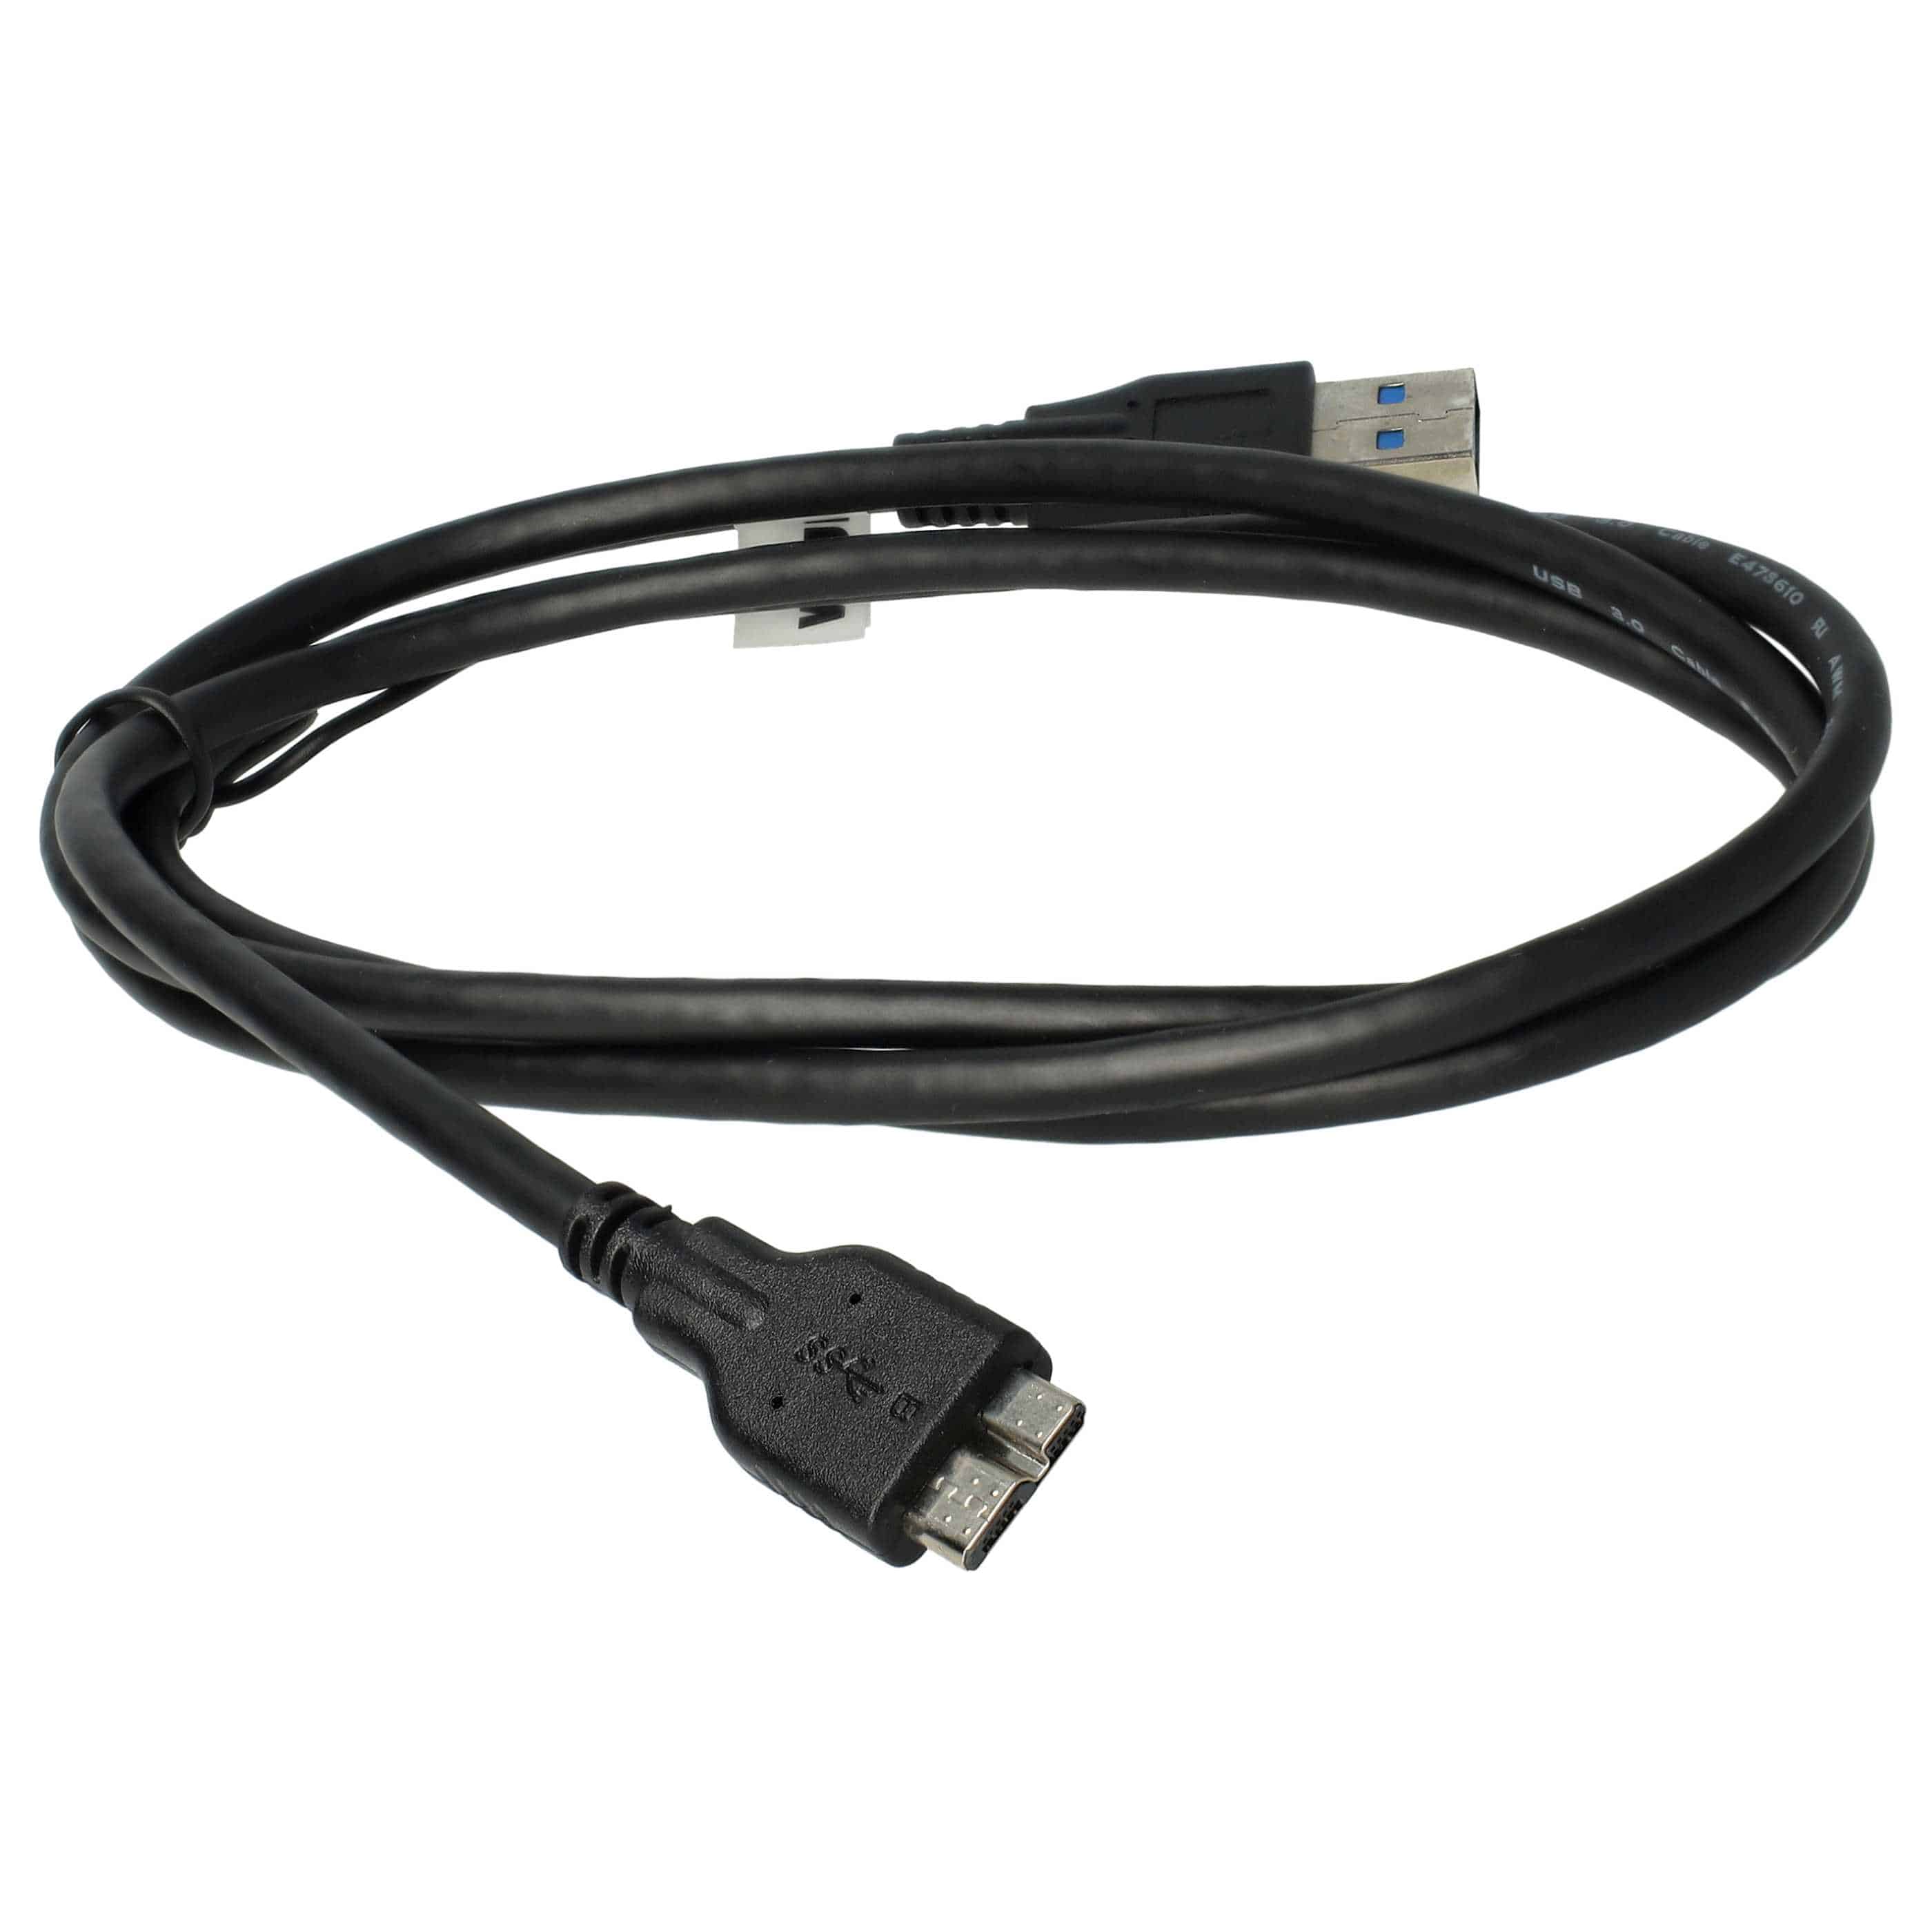 USB Data Cable replaces Nikon UC-E14, UC-E22 for Nikon Camera - 150 cm